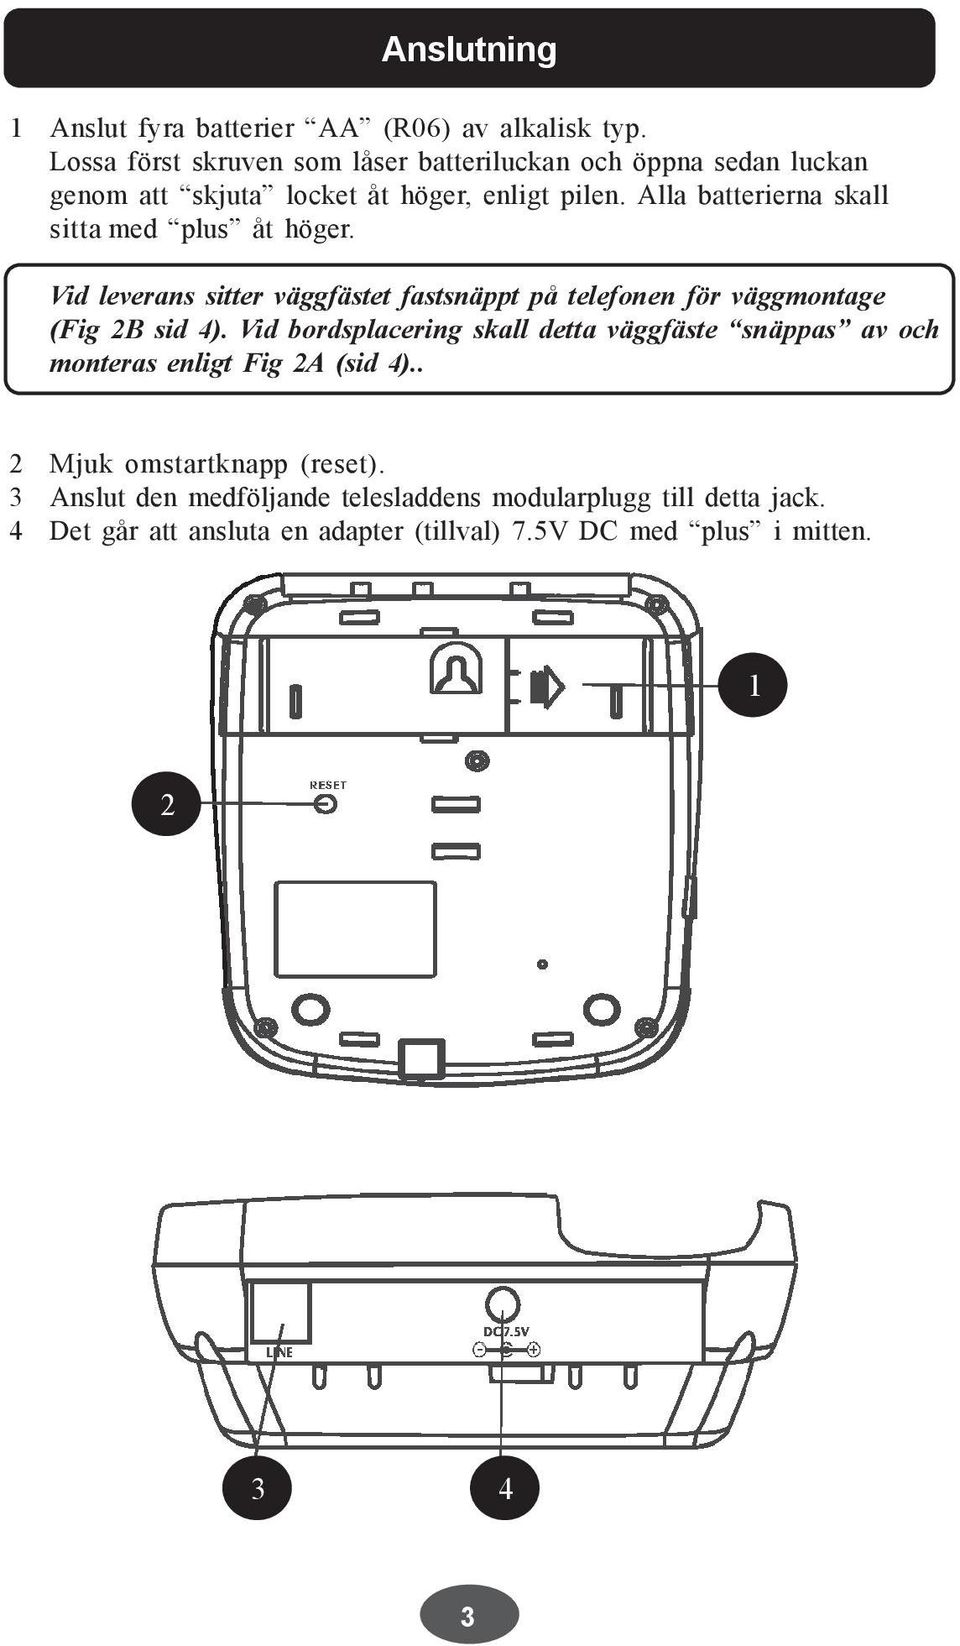 Alla batterierna skall sitta med plus åt höger. Vid leverans sitter väggfästet fastsnäppt på telefonen för väggmontage (Fig 2B sid 4).